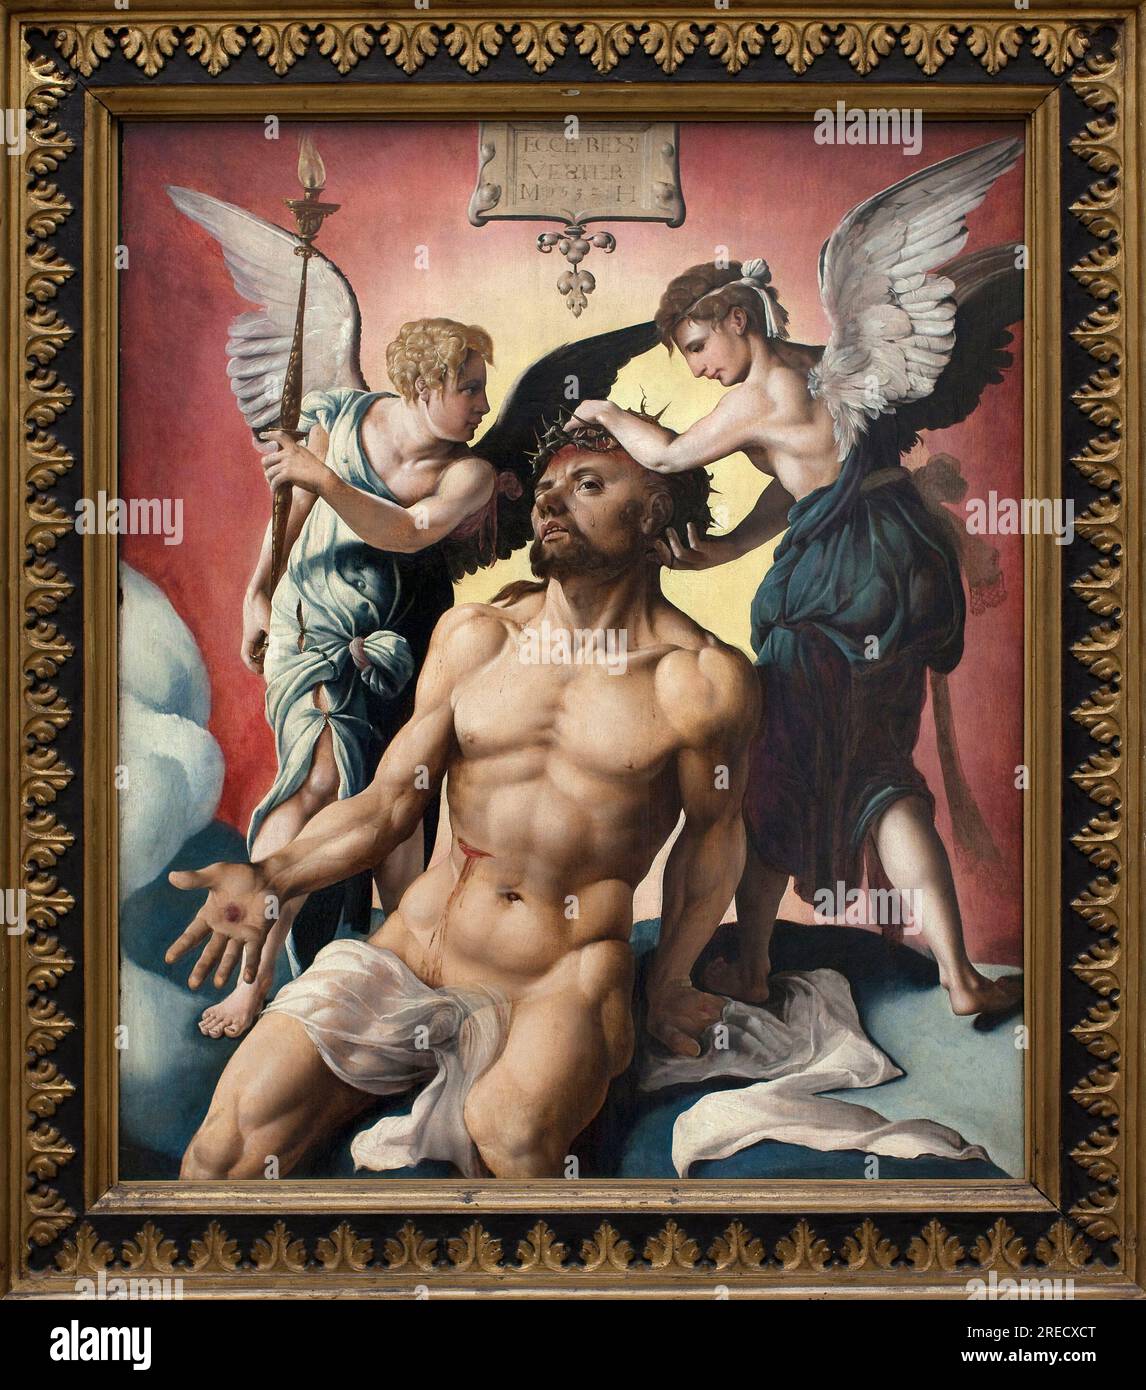 L'homme de douleurs. Peinture de Maarten van Heemskerck (Maerten Heemskerk van Veen) (Marten, Martin) (1498-1574), huile sur bois 1532. Dim. : 84,2 x 72,5 cm. Musee des beaux arts de Gand (Belgique). Stock Photo